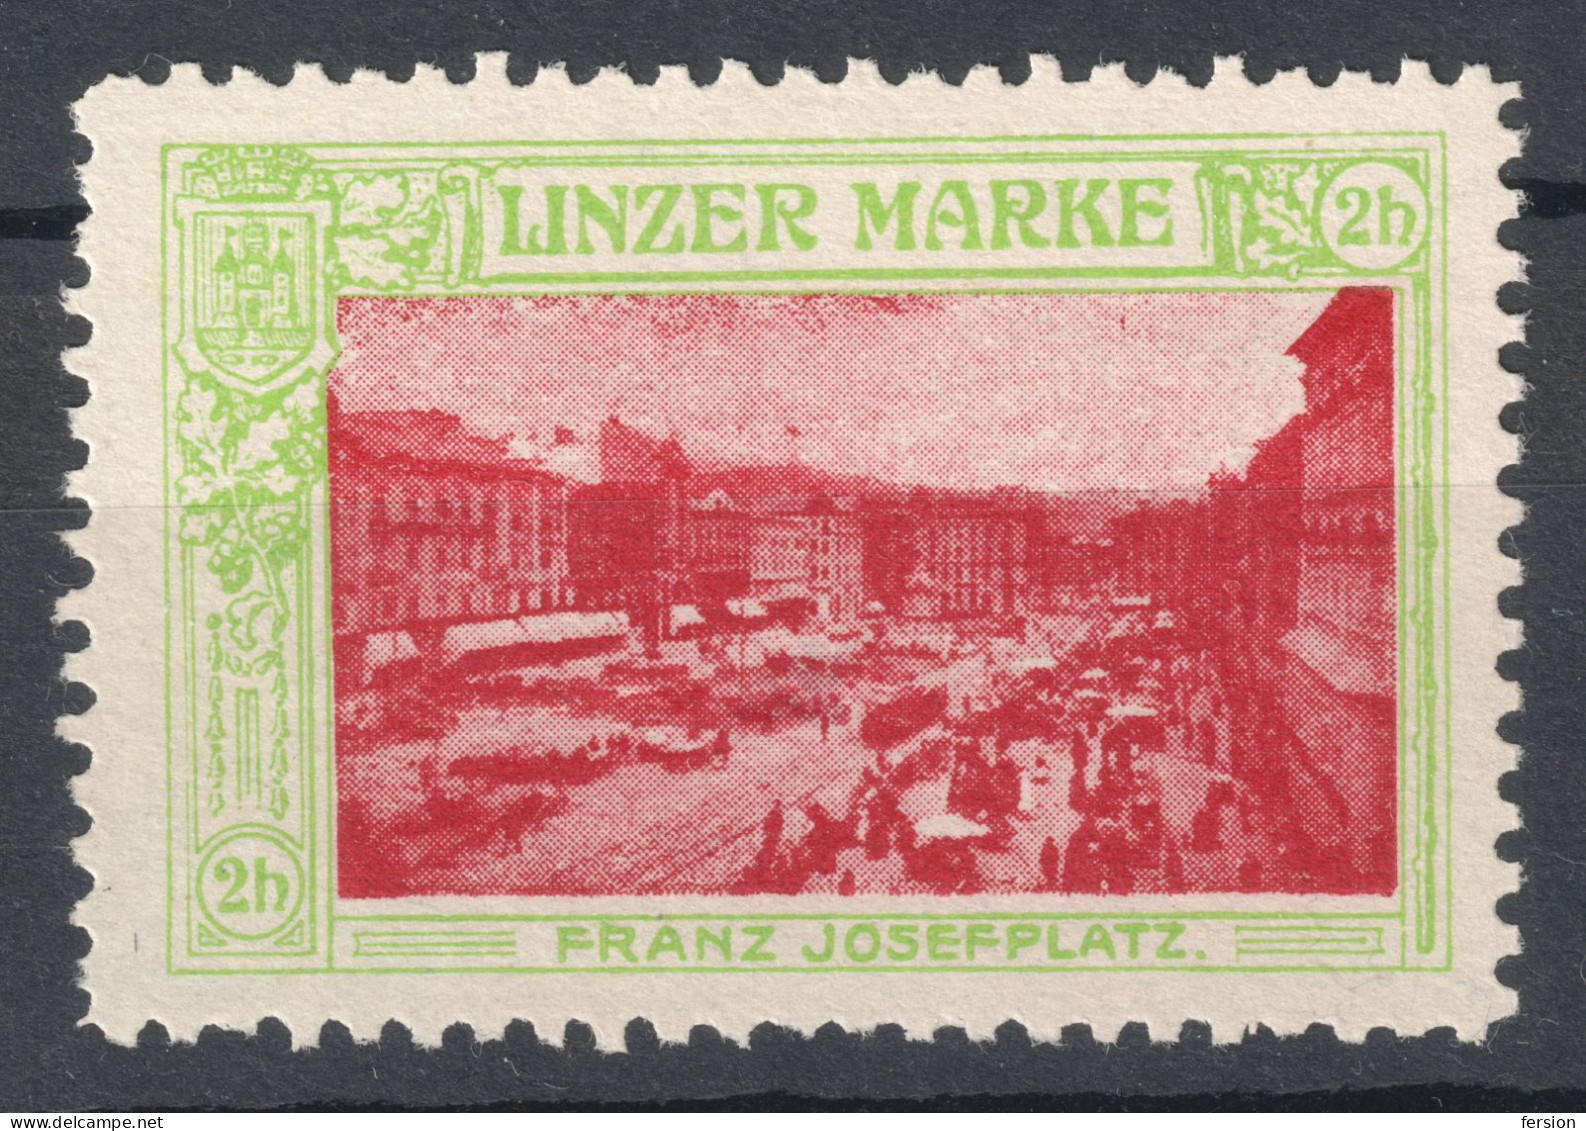 TRAM TRAMWAY Franz Joseph SQUARE - City LINZ 1910 Austria Charity Label Cinderella Vignette / LINZER MARKE - Strassenbahnen